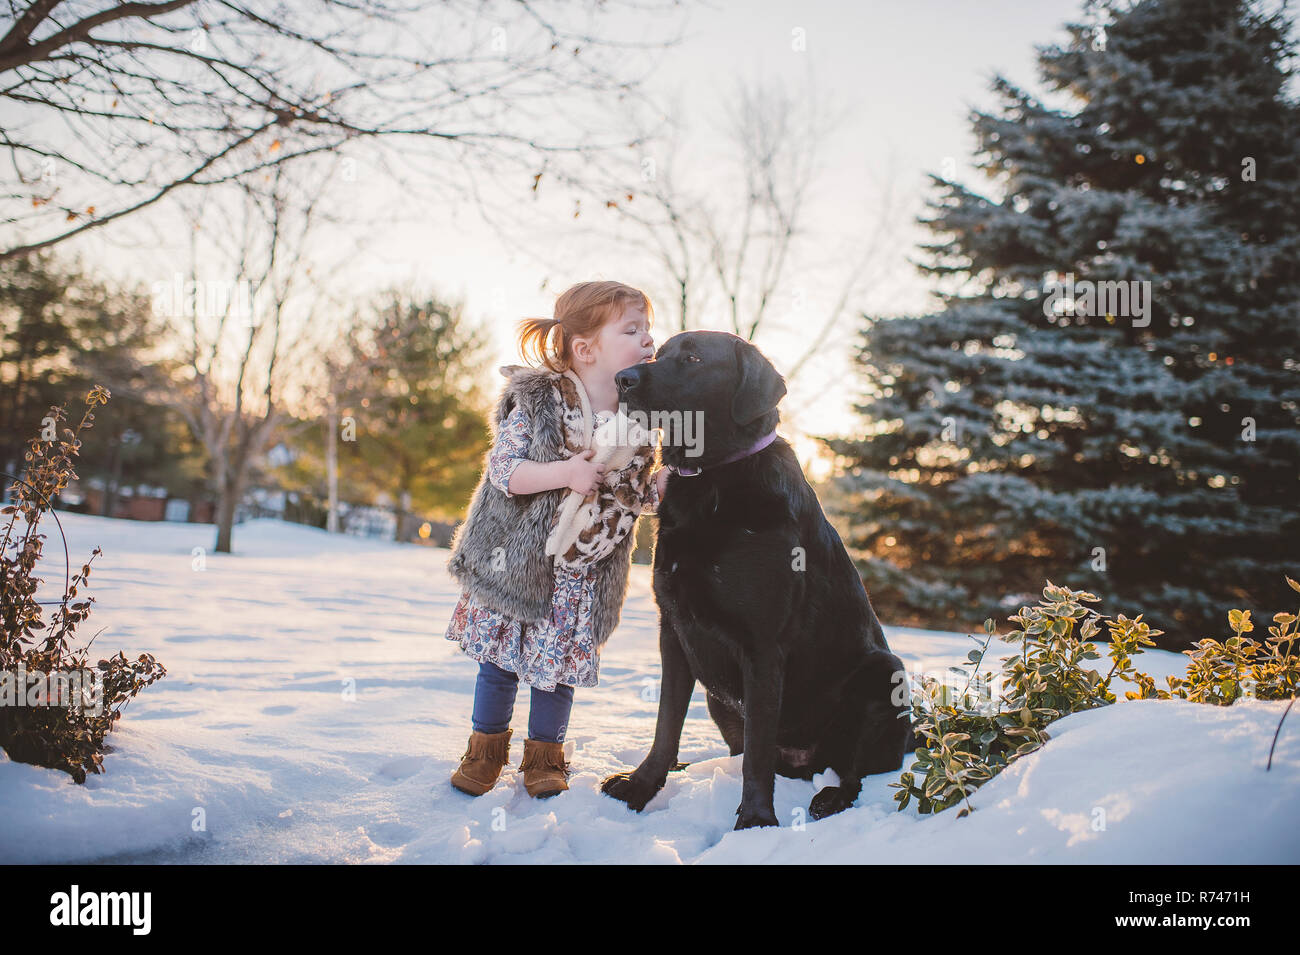 Hembra con pelo rojo niño jugando en la nieve con perros, Keene, Ontario, Canadá Foto de stock